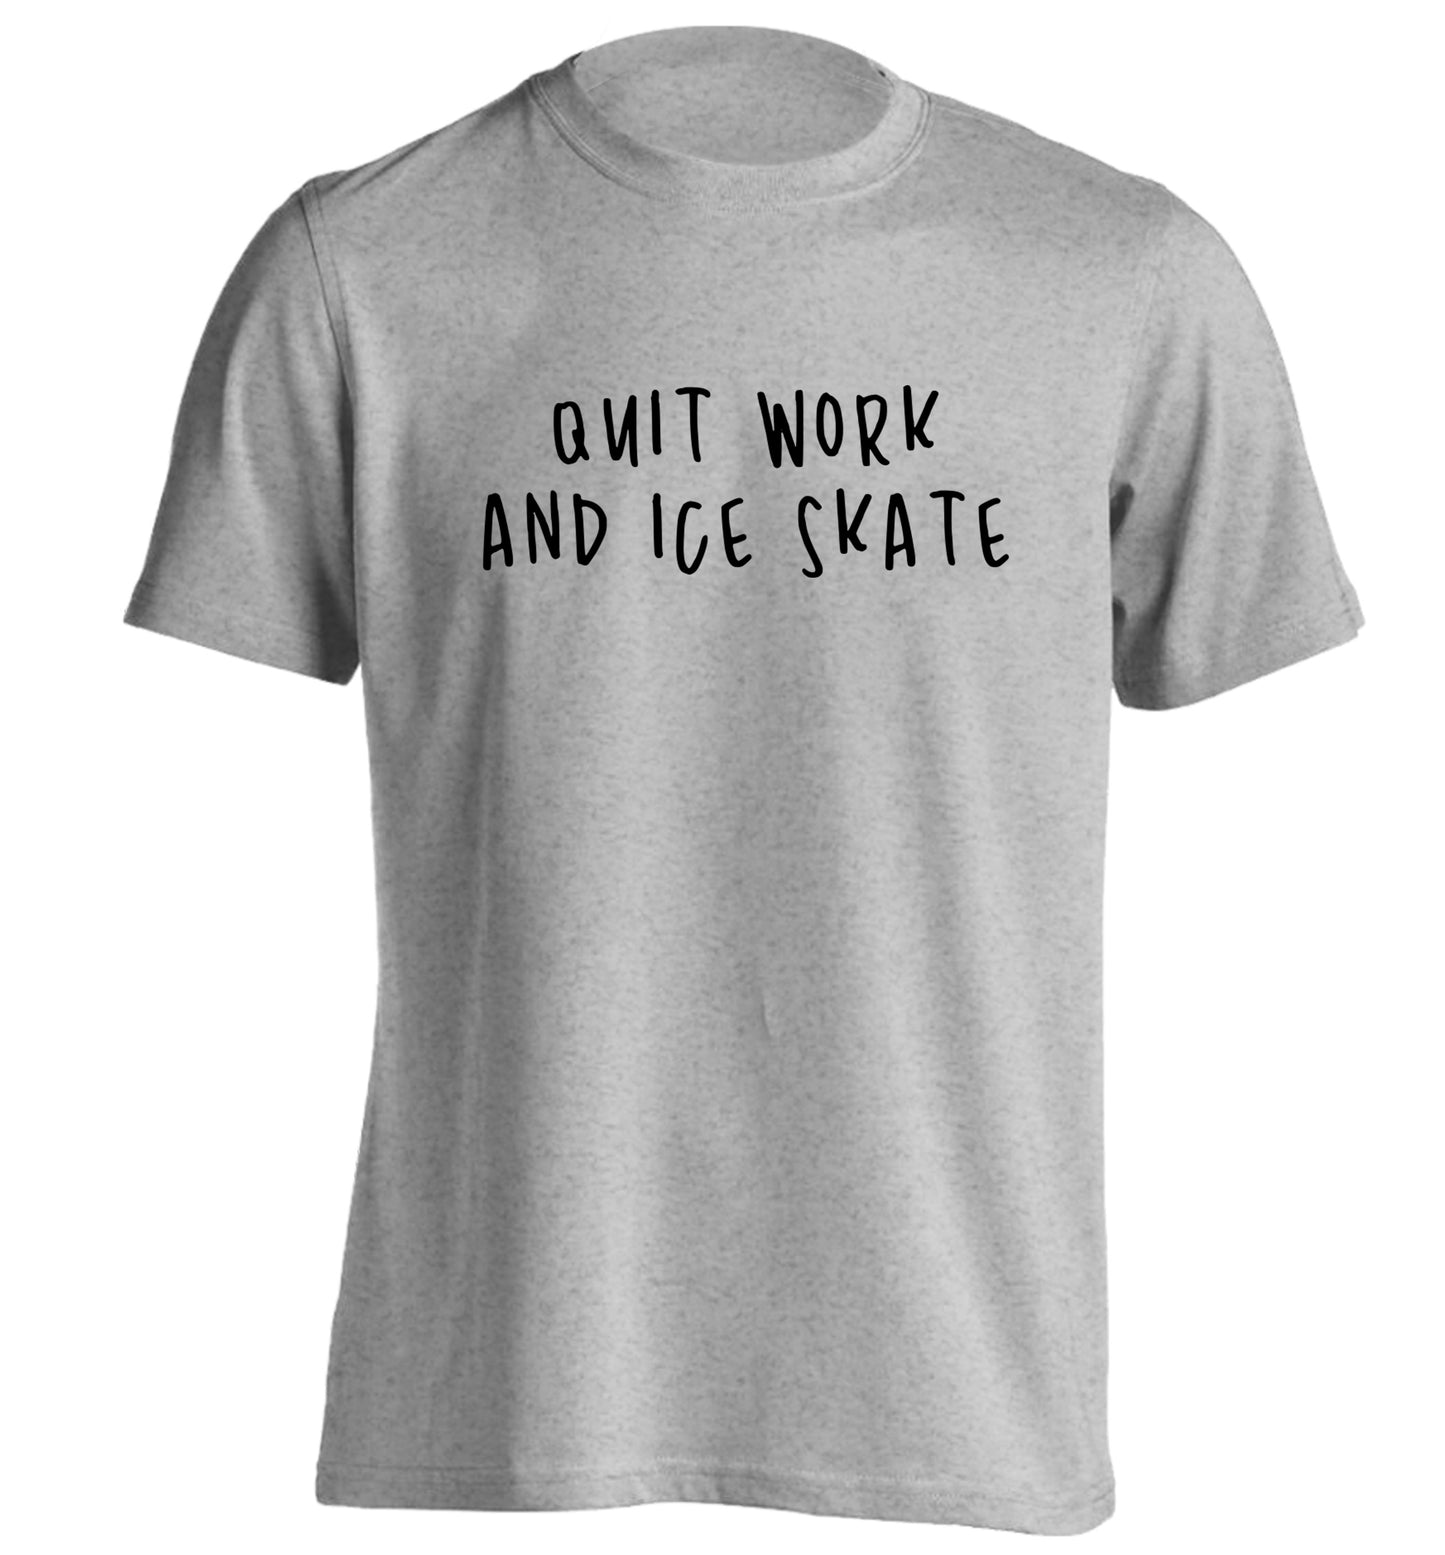 Quit work ice skate adults unisexgrey Tshirt 2XL